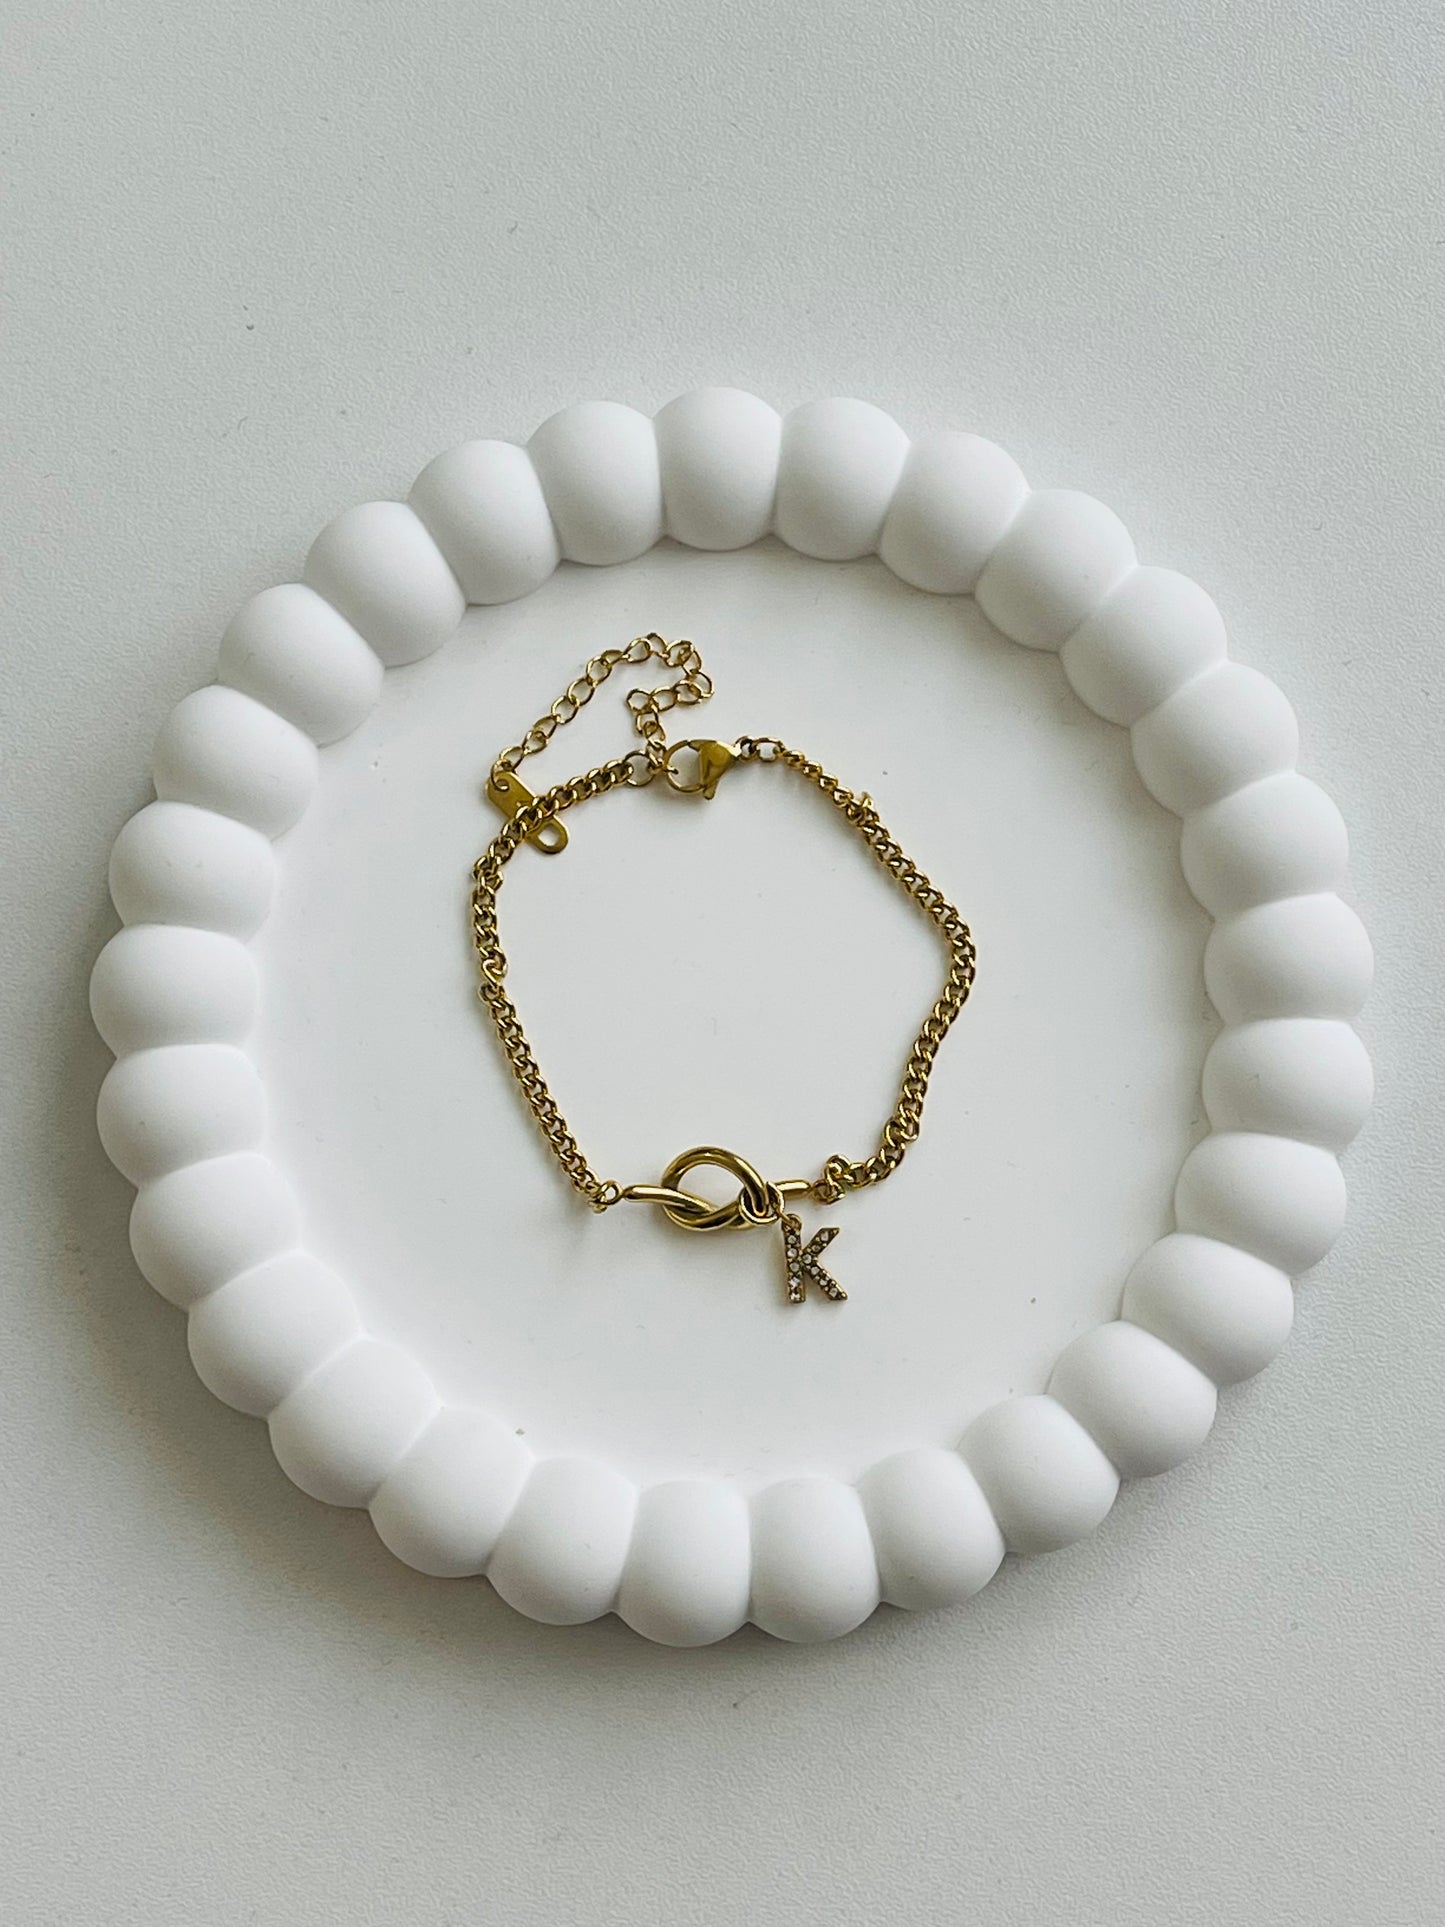 Initial Knots necklace & bracelet